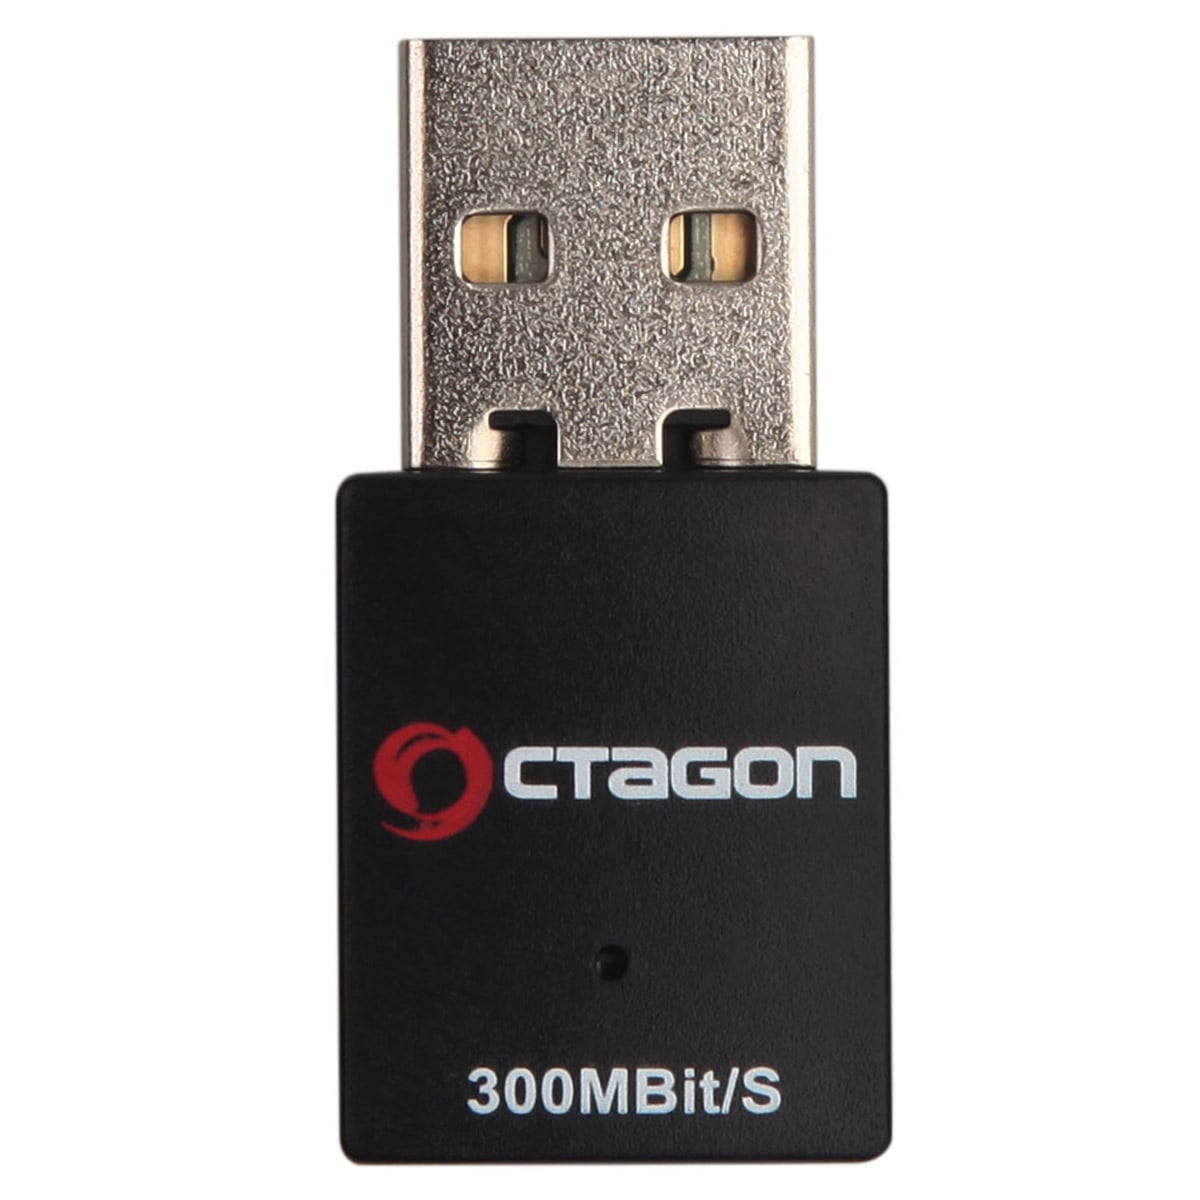 Octagon WL088 Optima WLAN Stick 300 MBit/s, 2.4 GHz WiFi, USB 2.0 Adapter schwarz